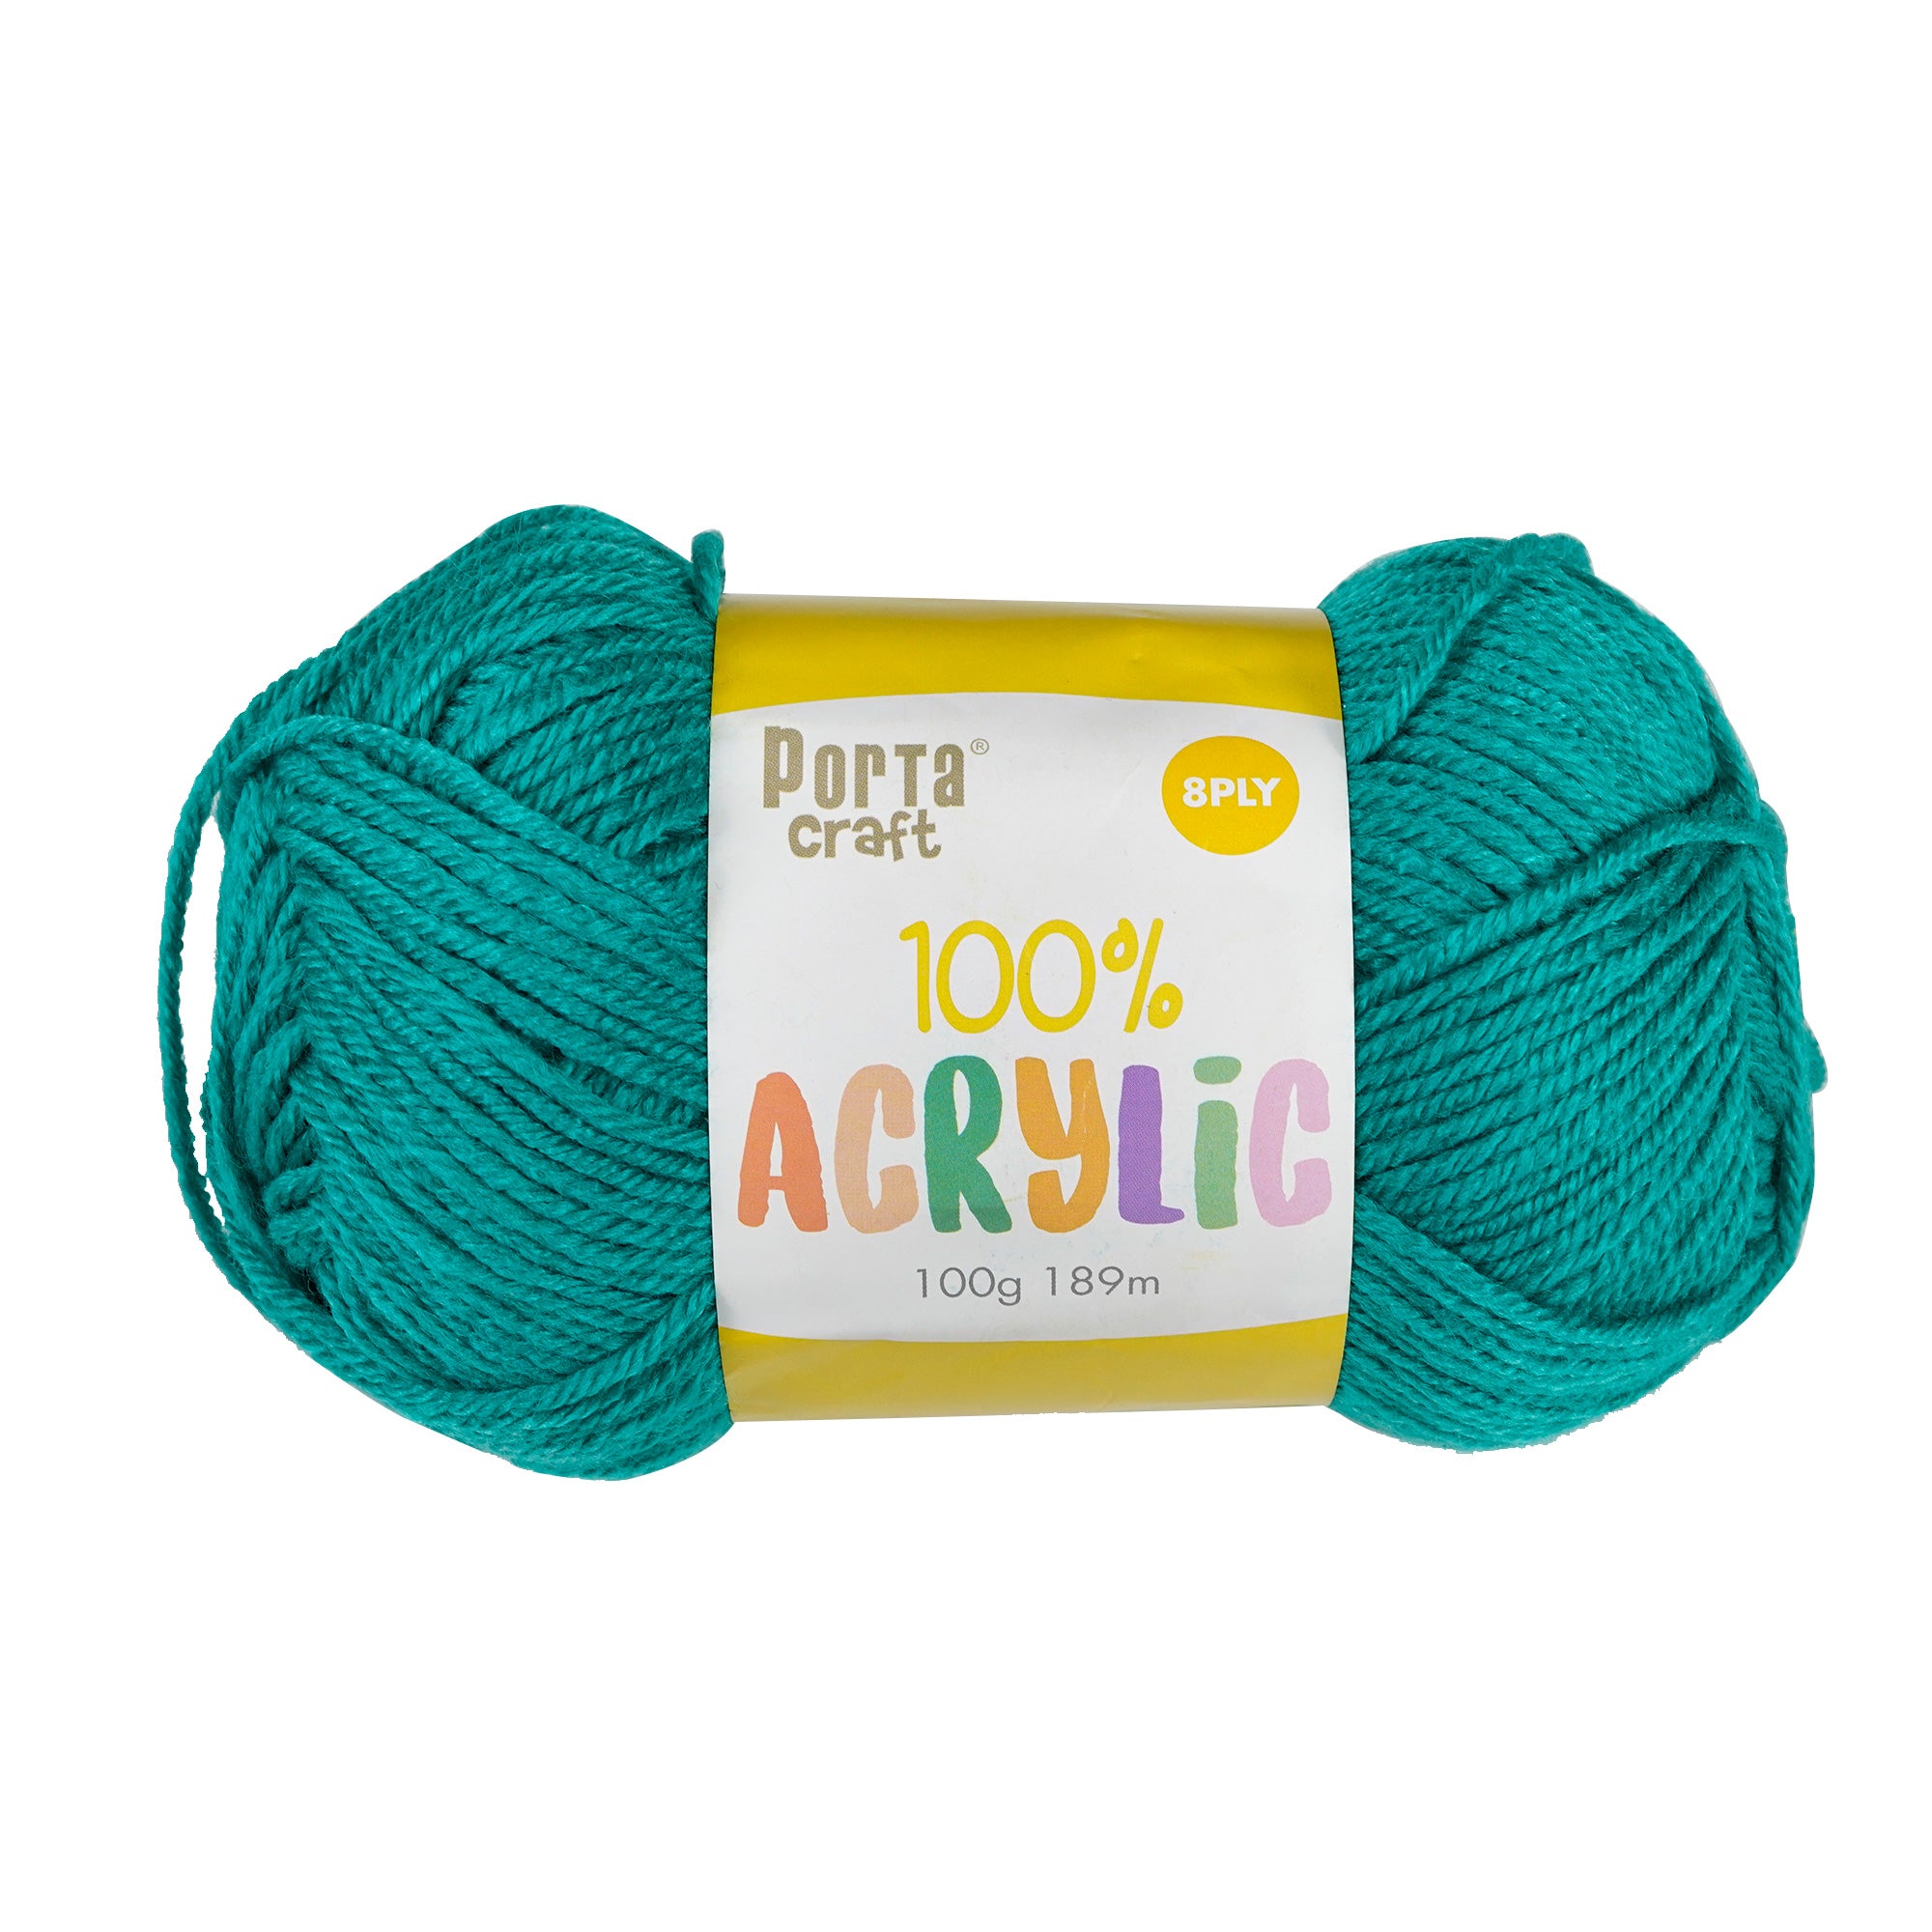 Porta Craft Acrylic Yarn 100% 100Gm 189M 8Ply Teal - VC